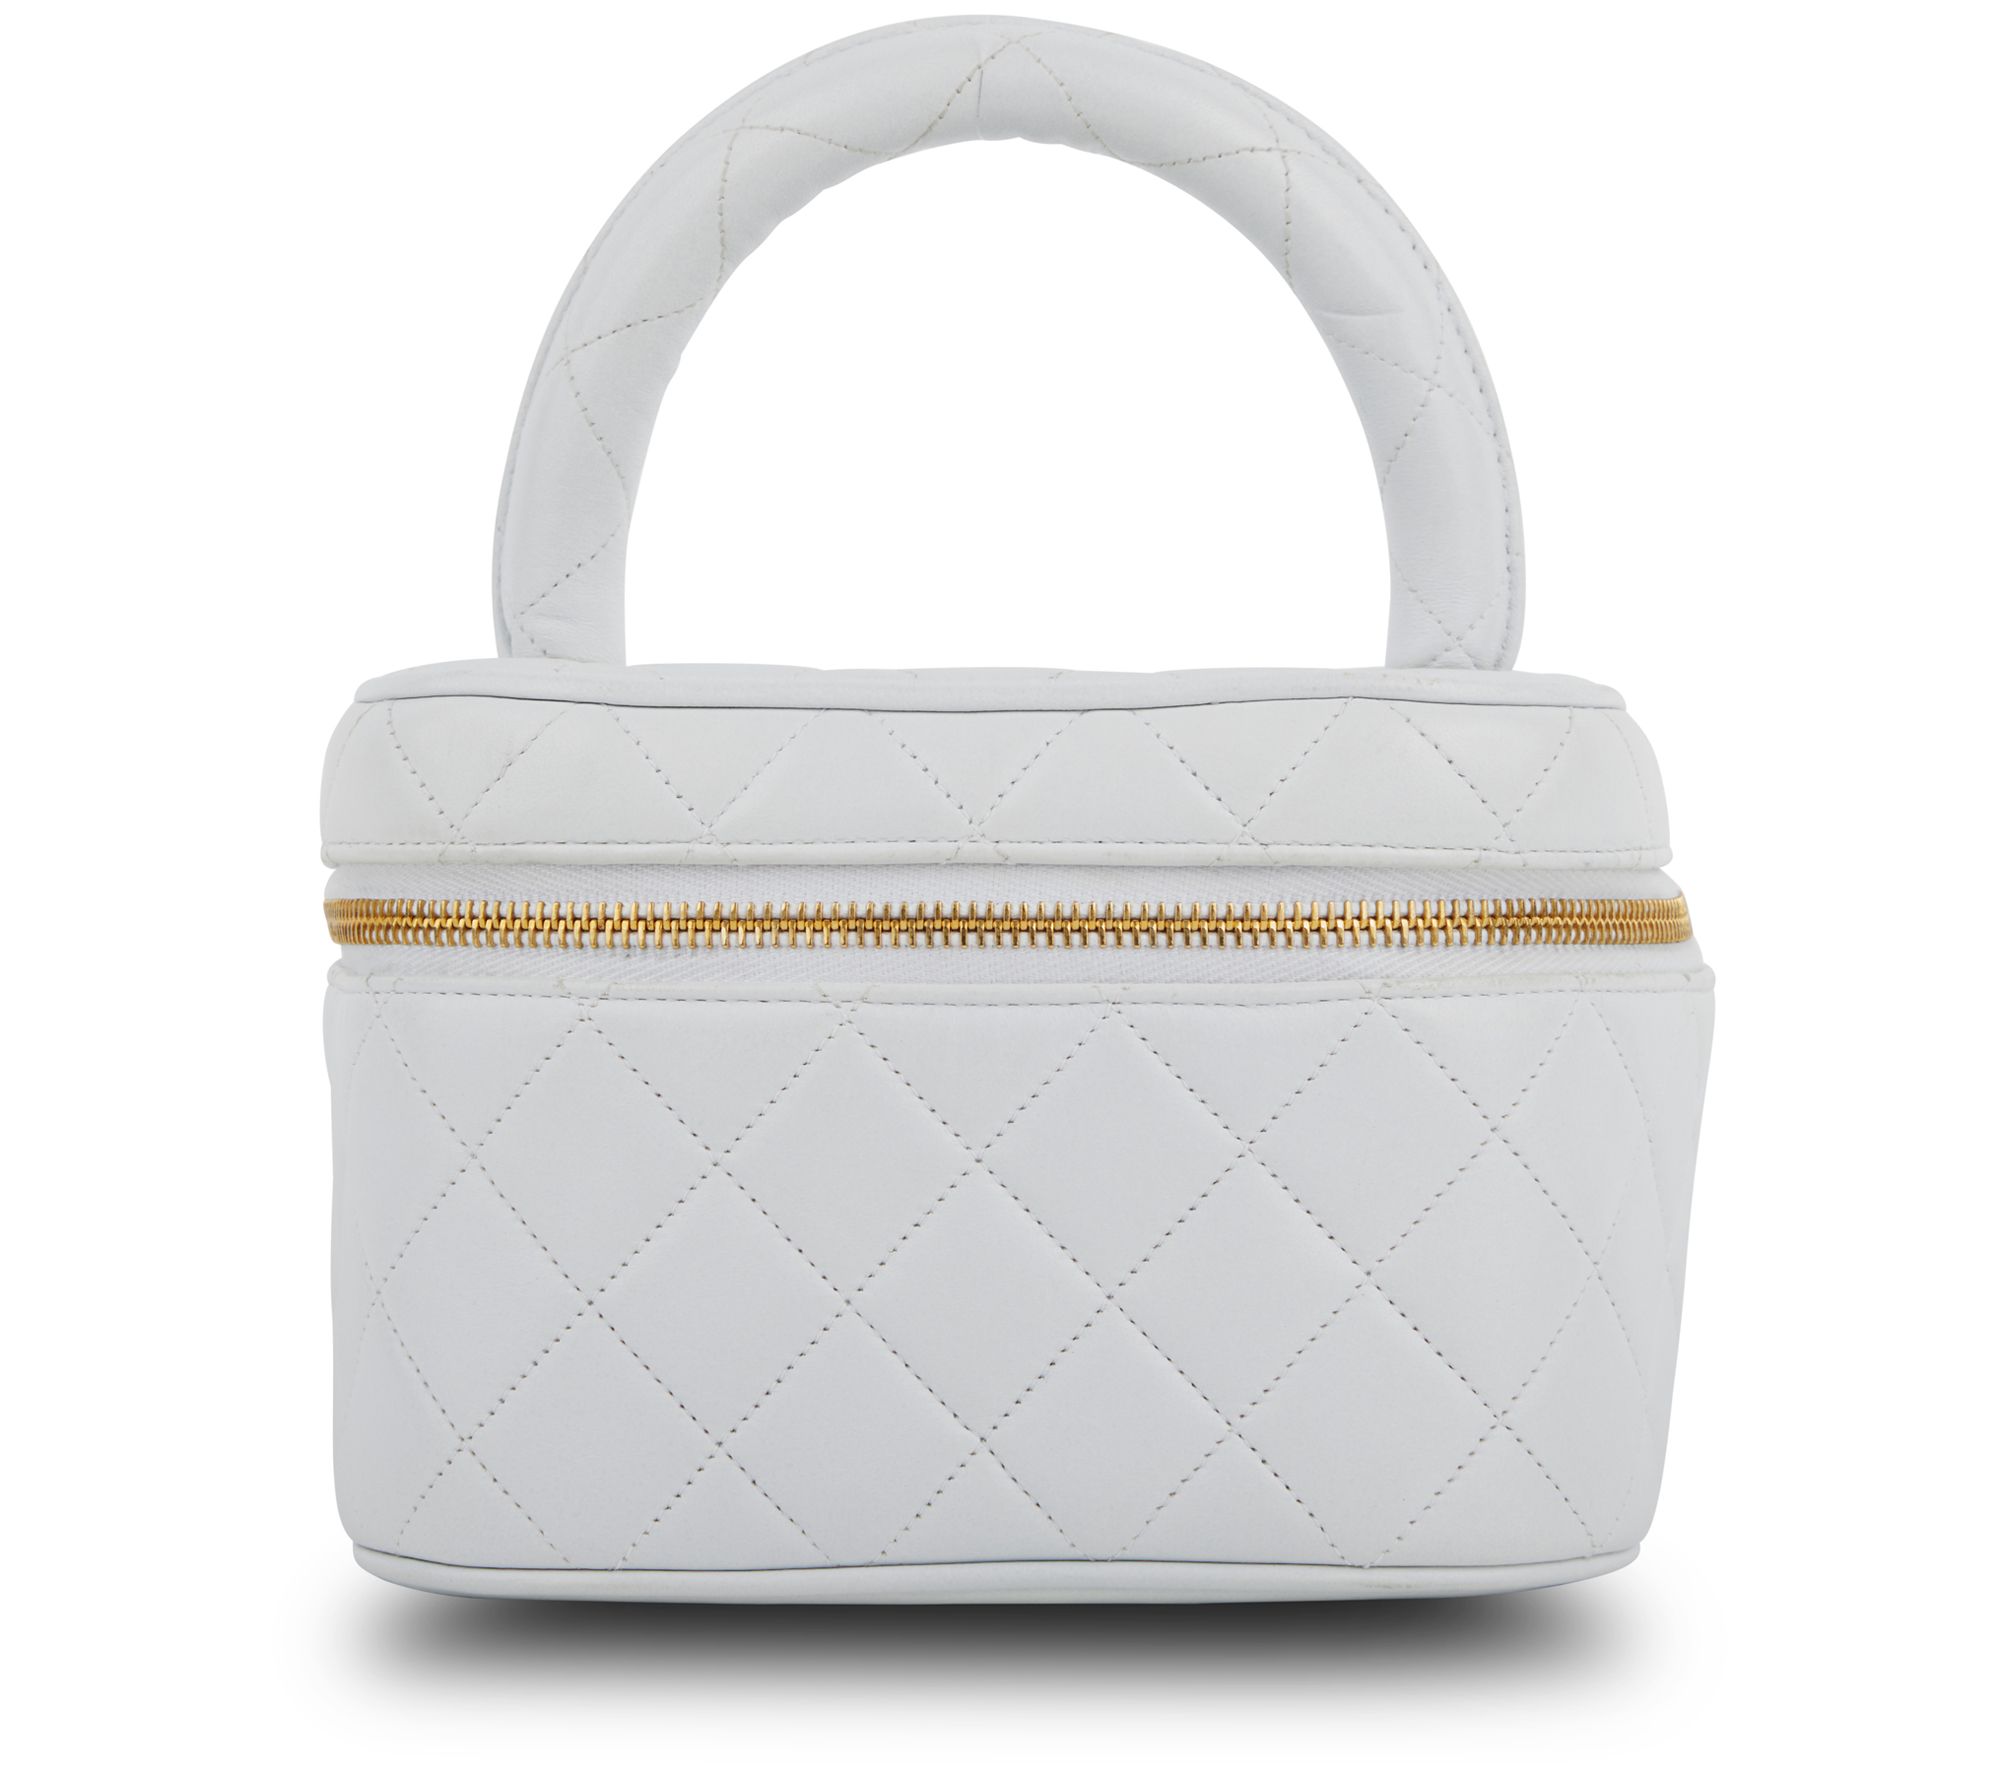 Authentic Louis Vuitton Chanel medallion Tote bag – JOY'S CLASSY